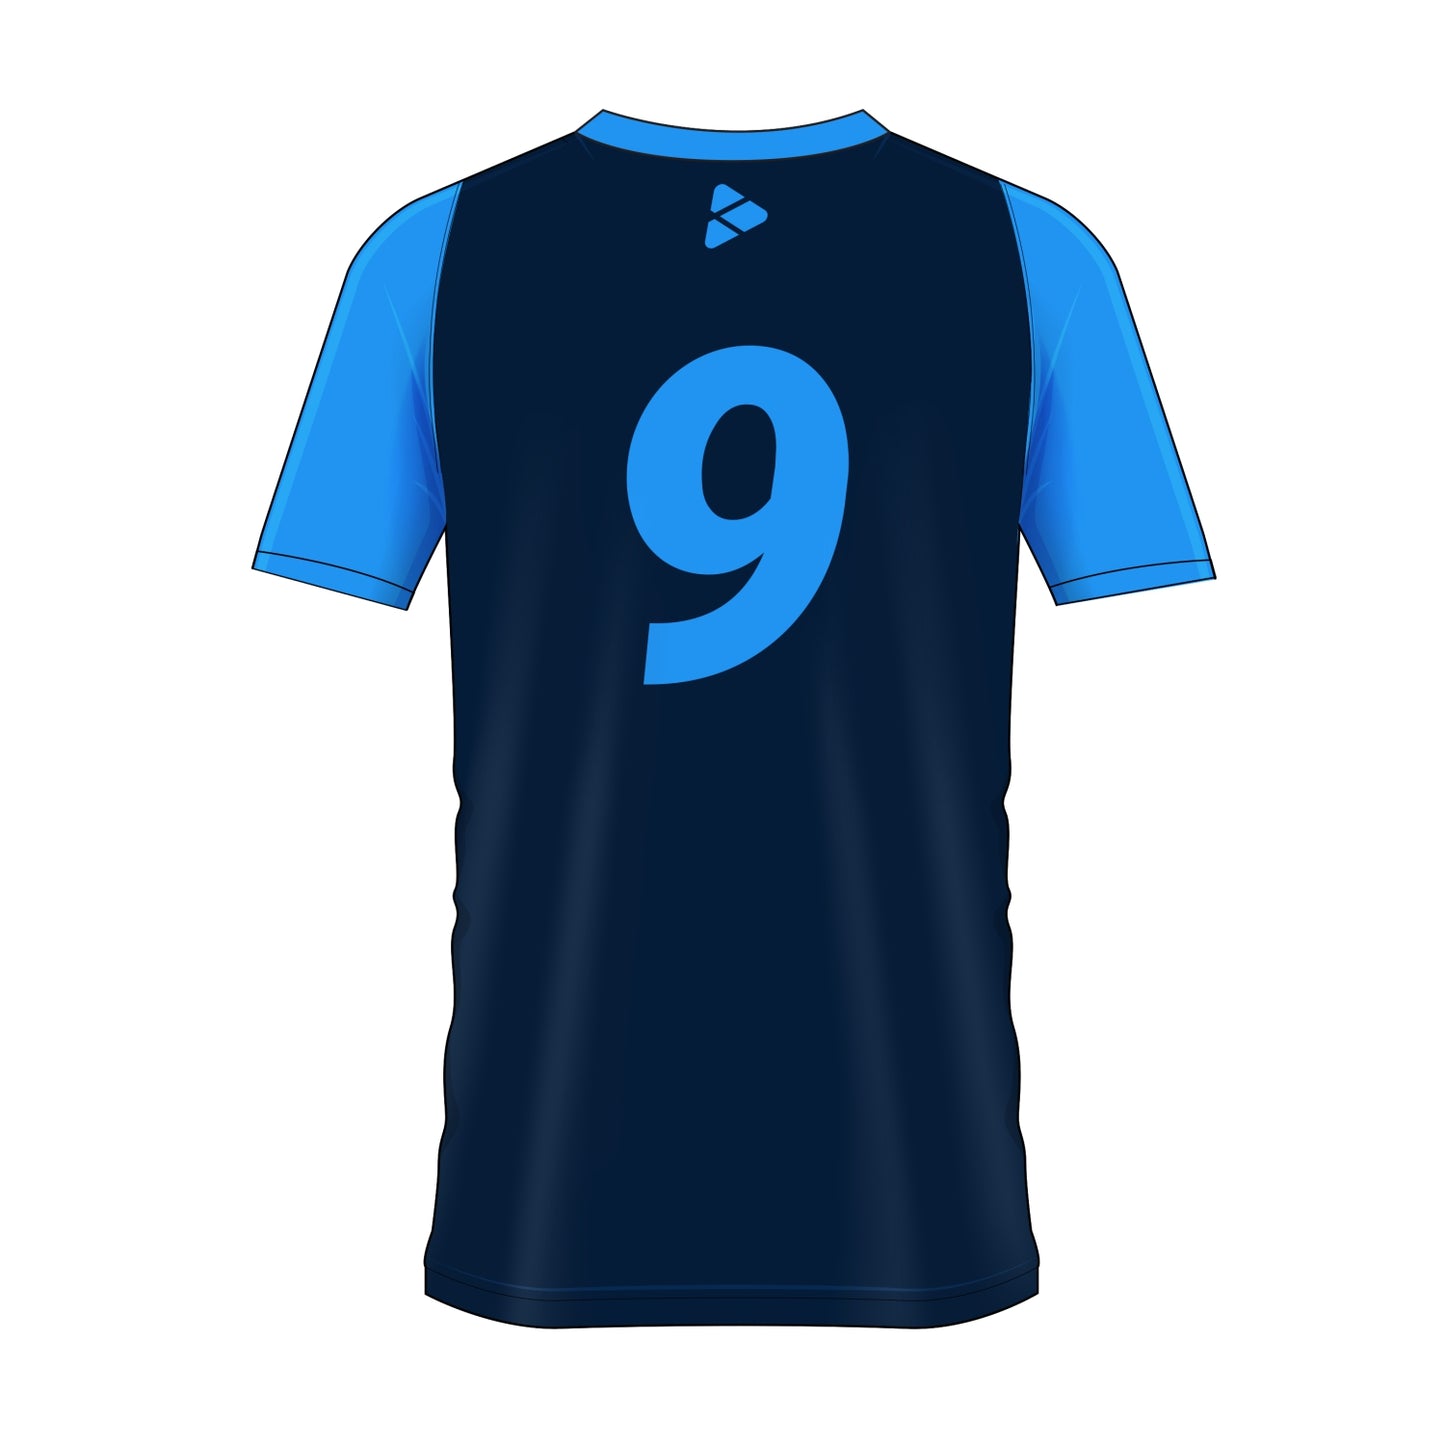 Football Shirt - Centa Short